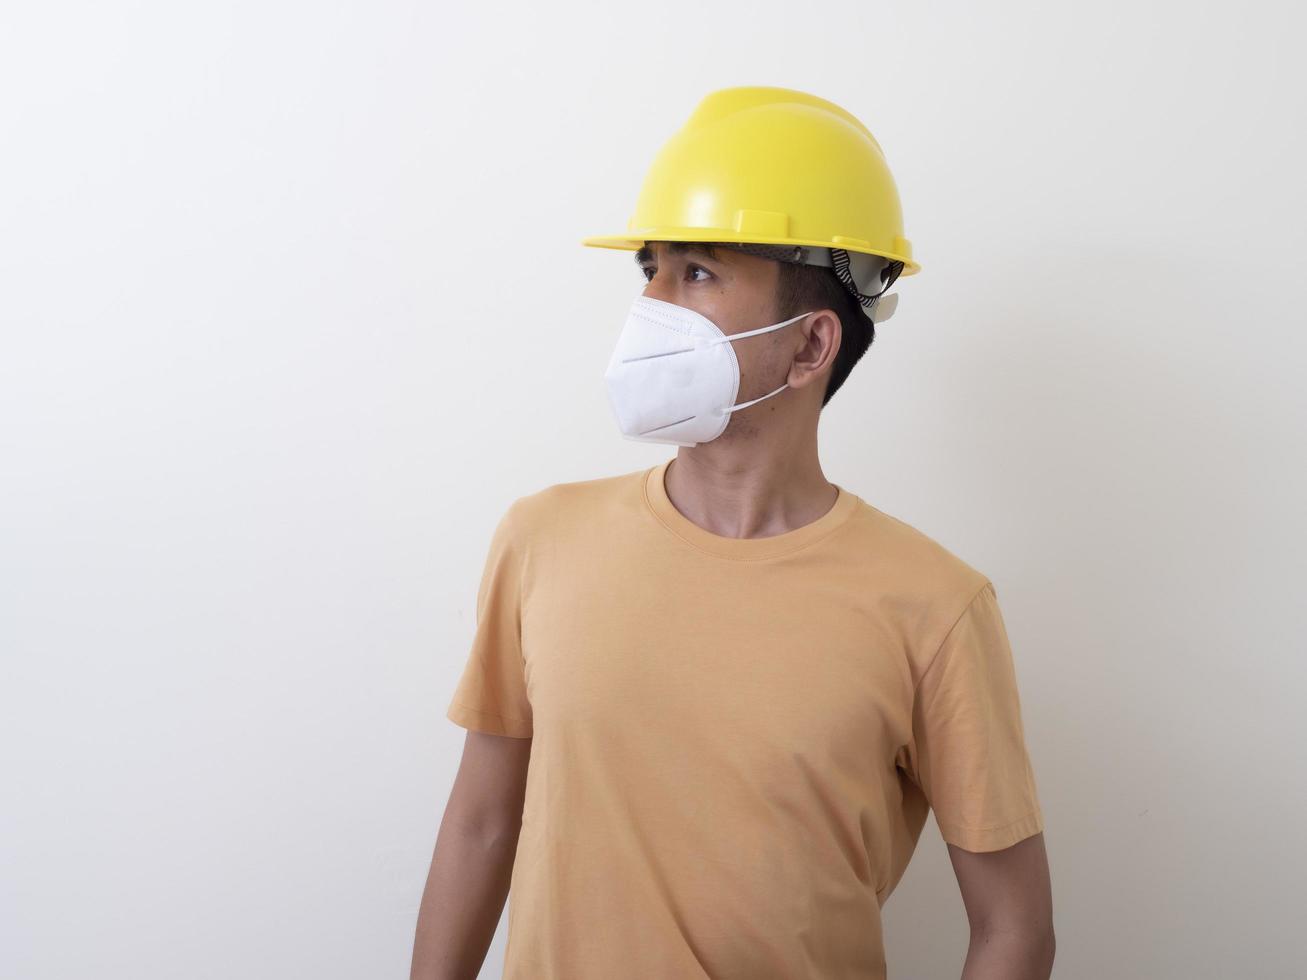 asiatische industriearbeiter tragen gelbe schutzhelme, tragen schutzmasken für ihre gesundheit foto